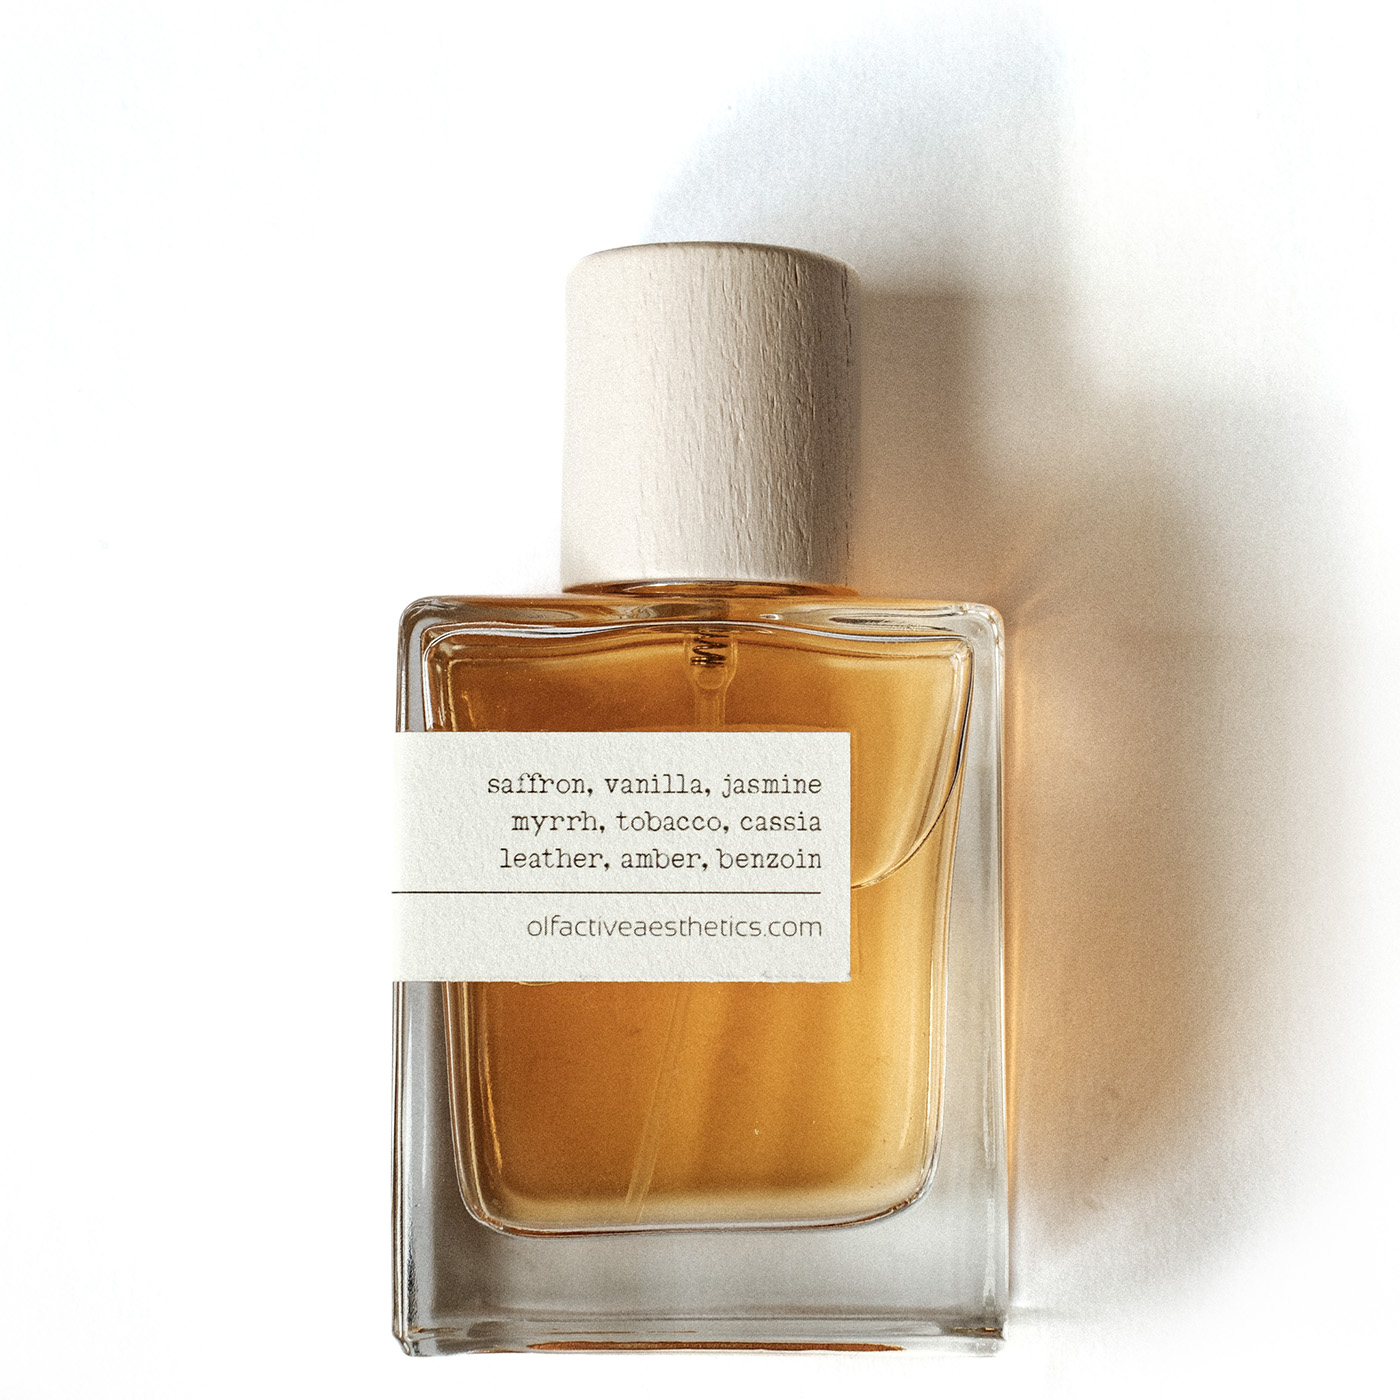 Cuir Ambré niche perfume - olfactive aesthetics author's niche perfumery